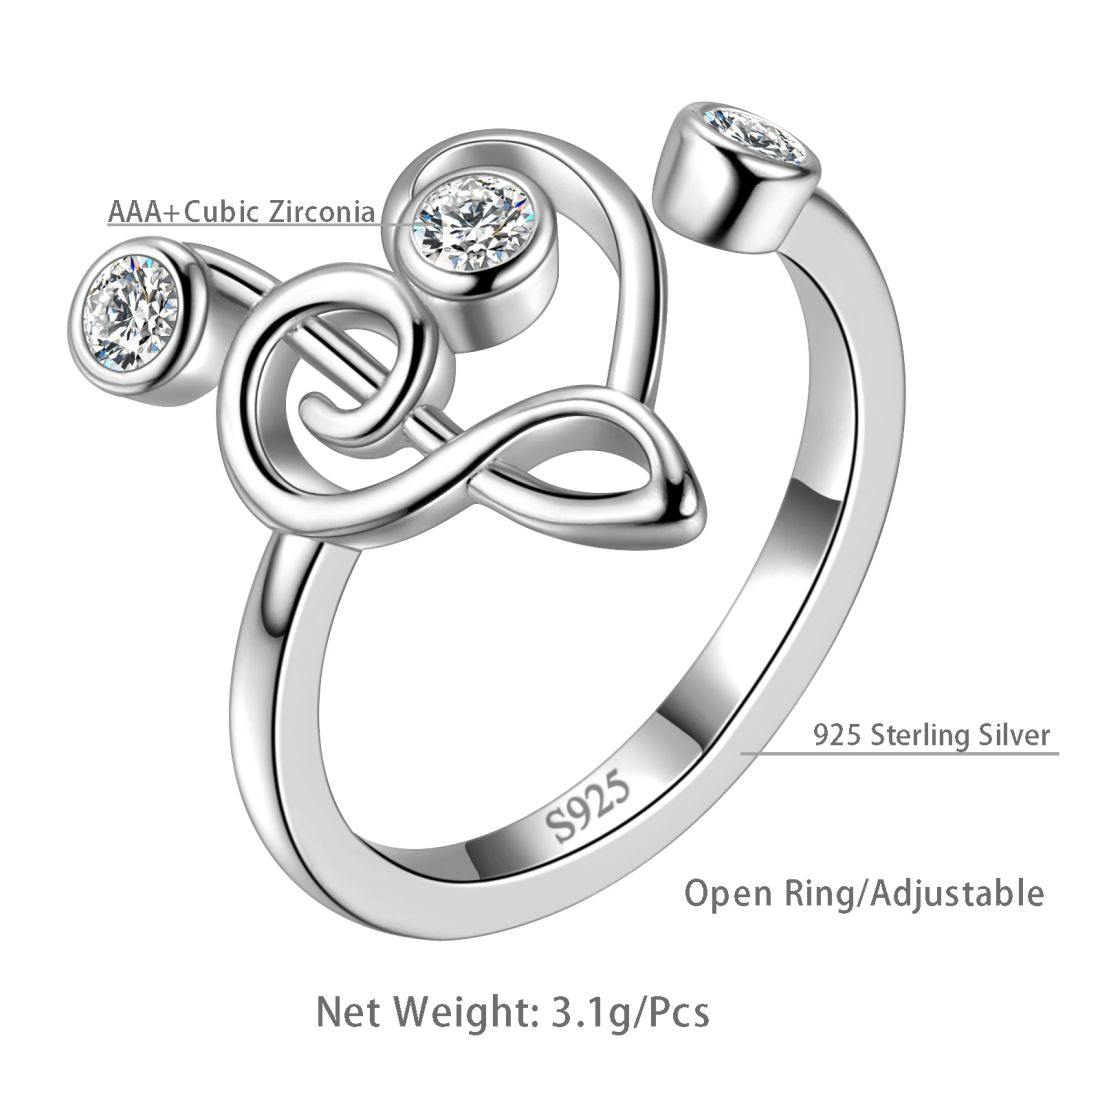 Adjustable Treble Clef Bracelet in Sterling Silver 